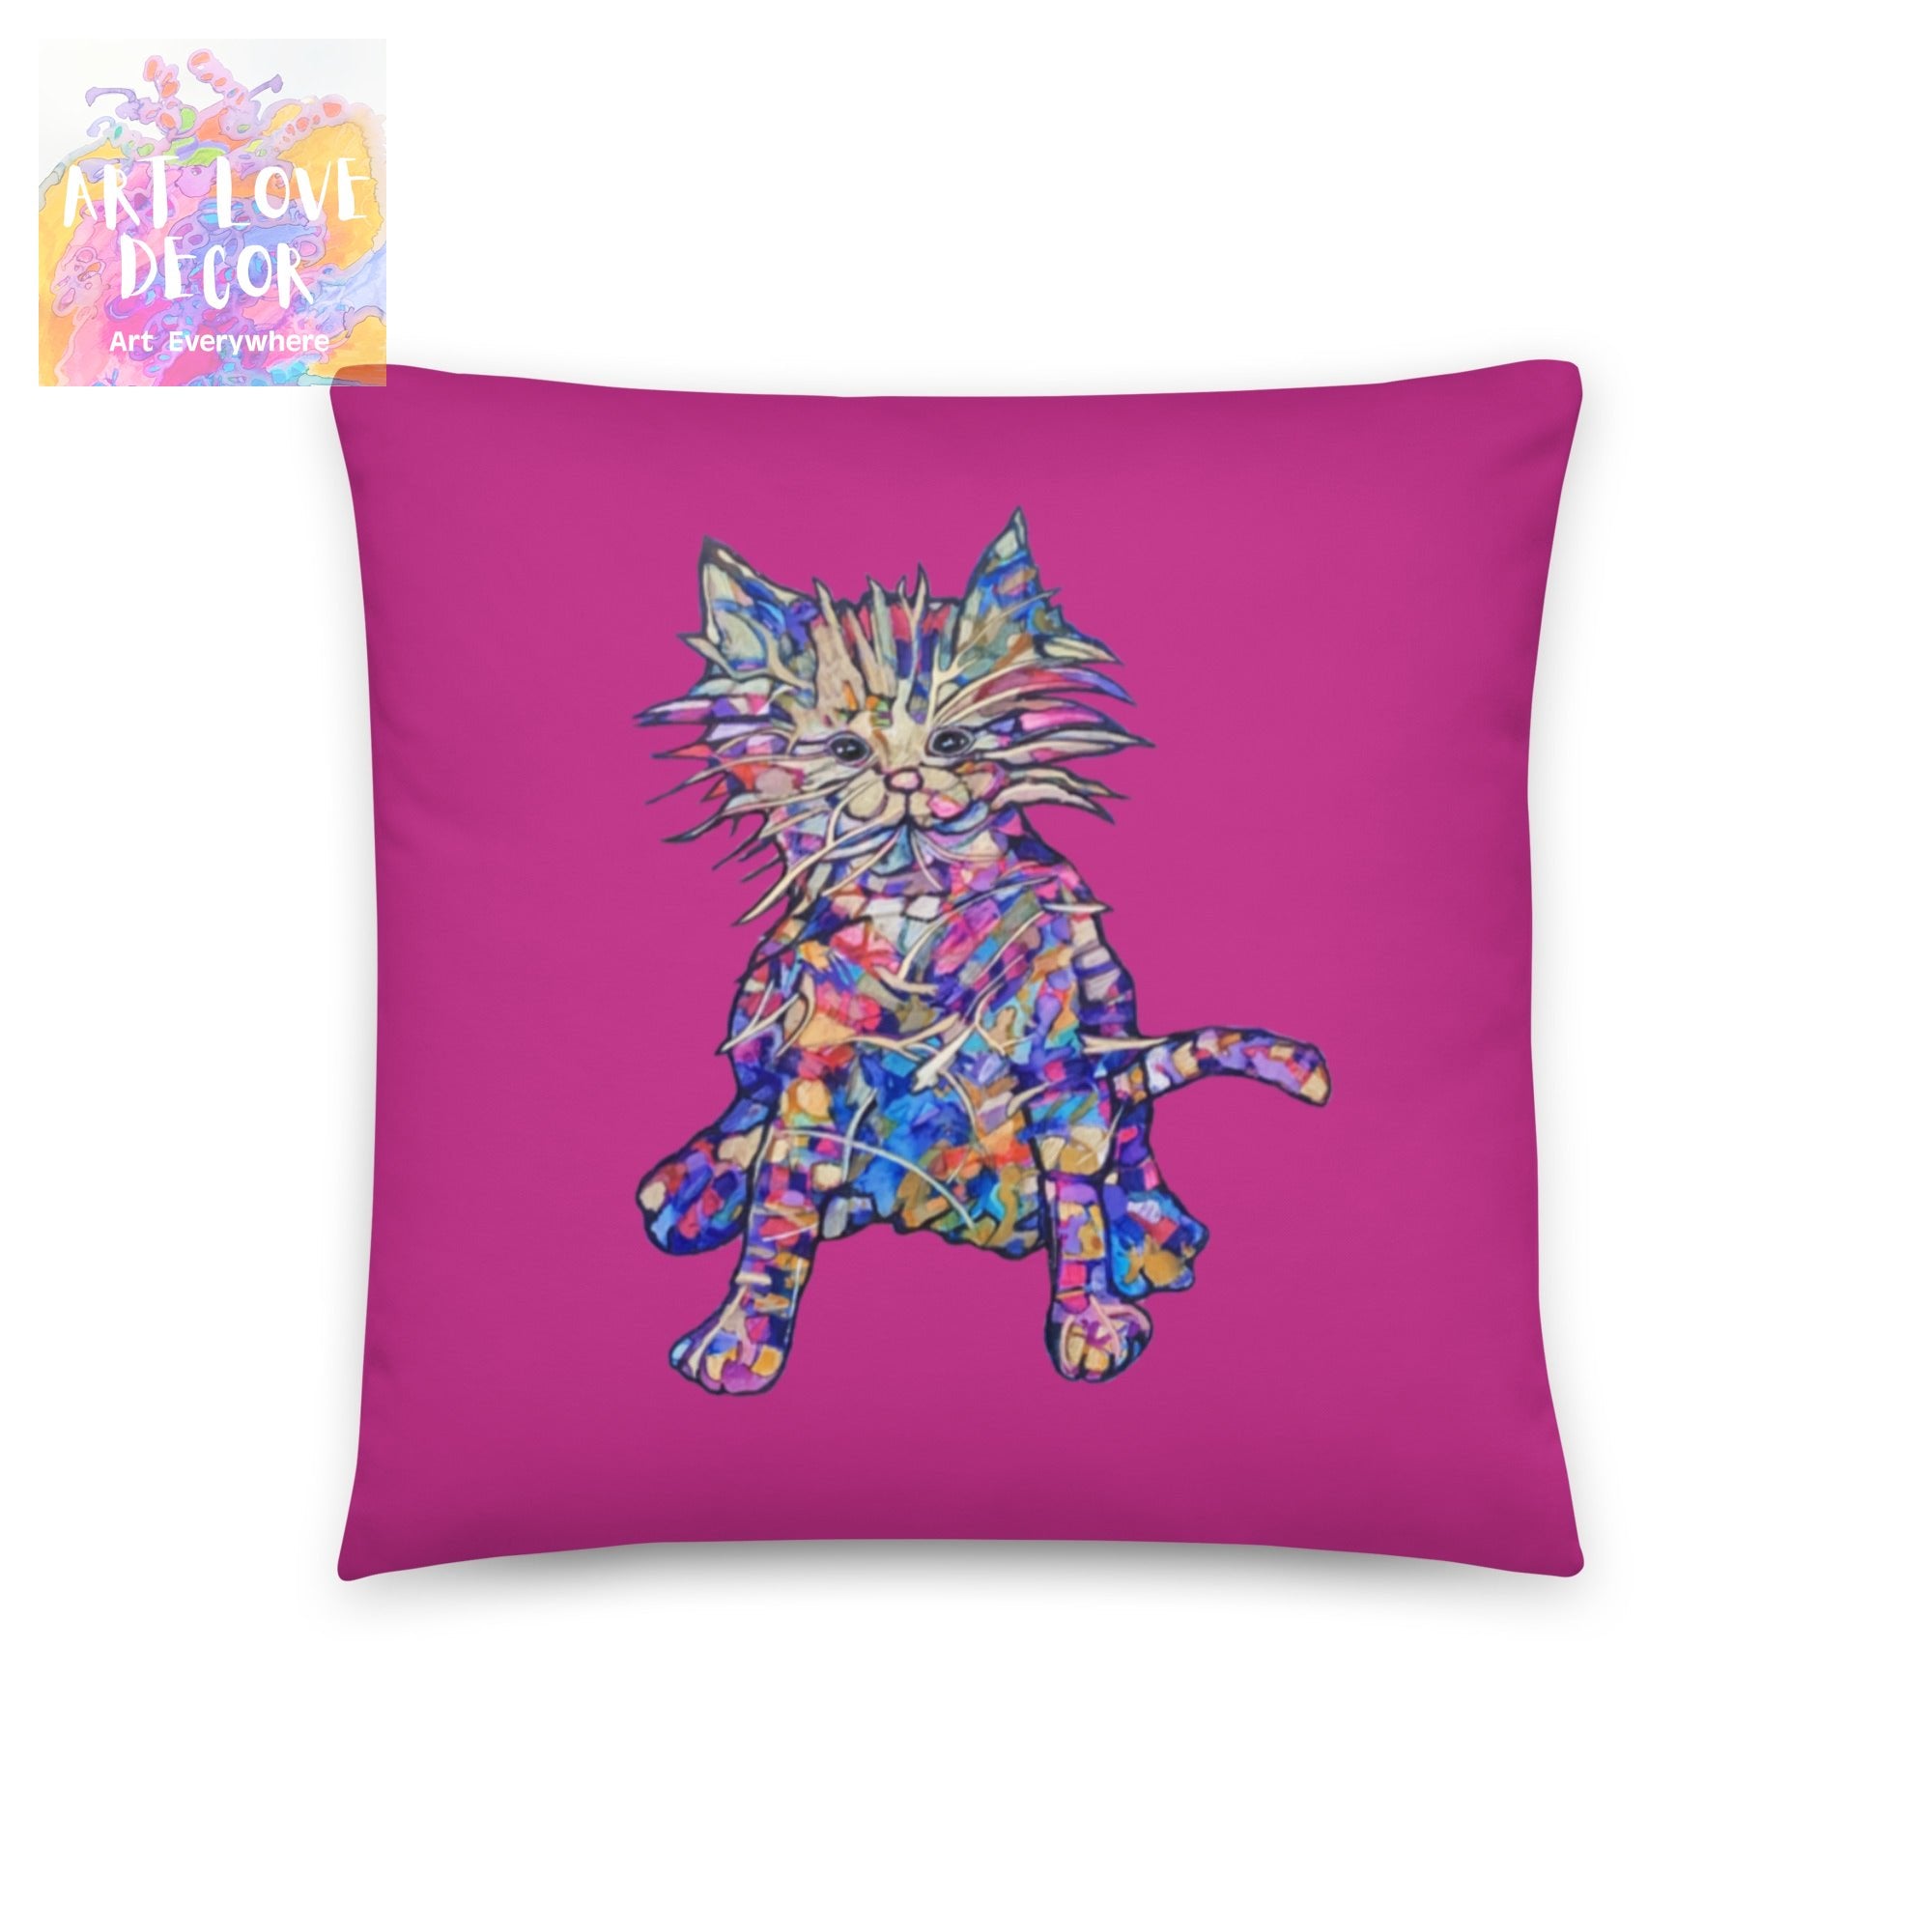 Busy Kitty Pillow - Art Love Decor